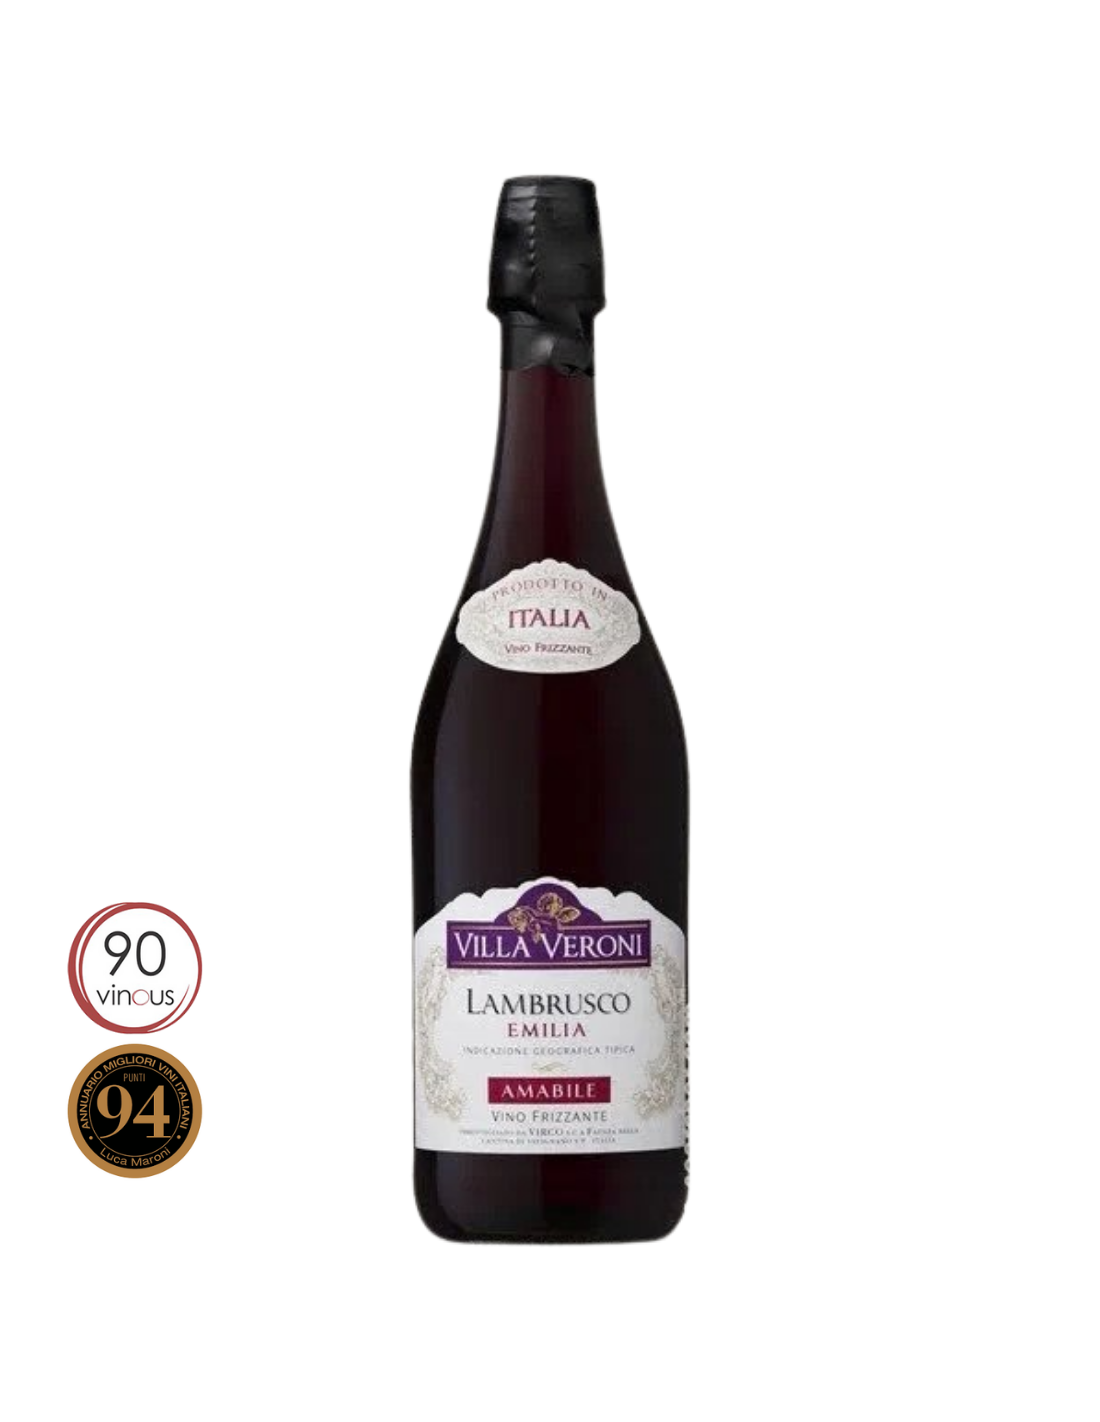 Vin frizzante Lambrusco, Villa Veroni Amabile Emilia, 0.75L, 8% alc., Italia alcooldiscount.ro